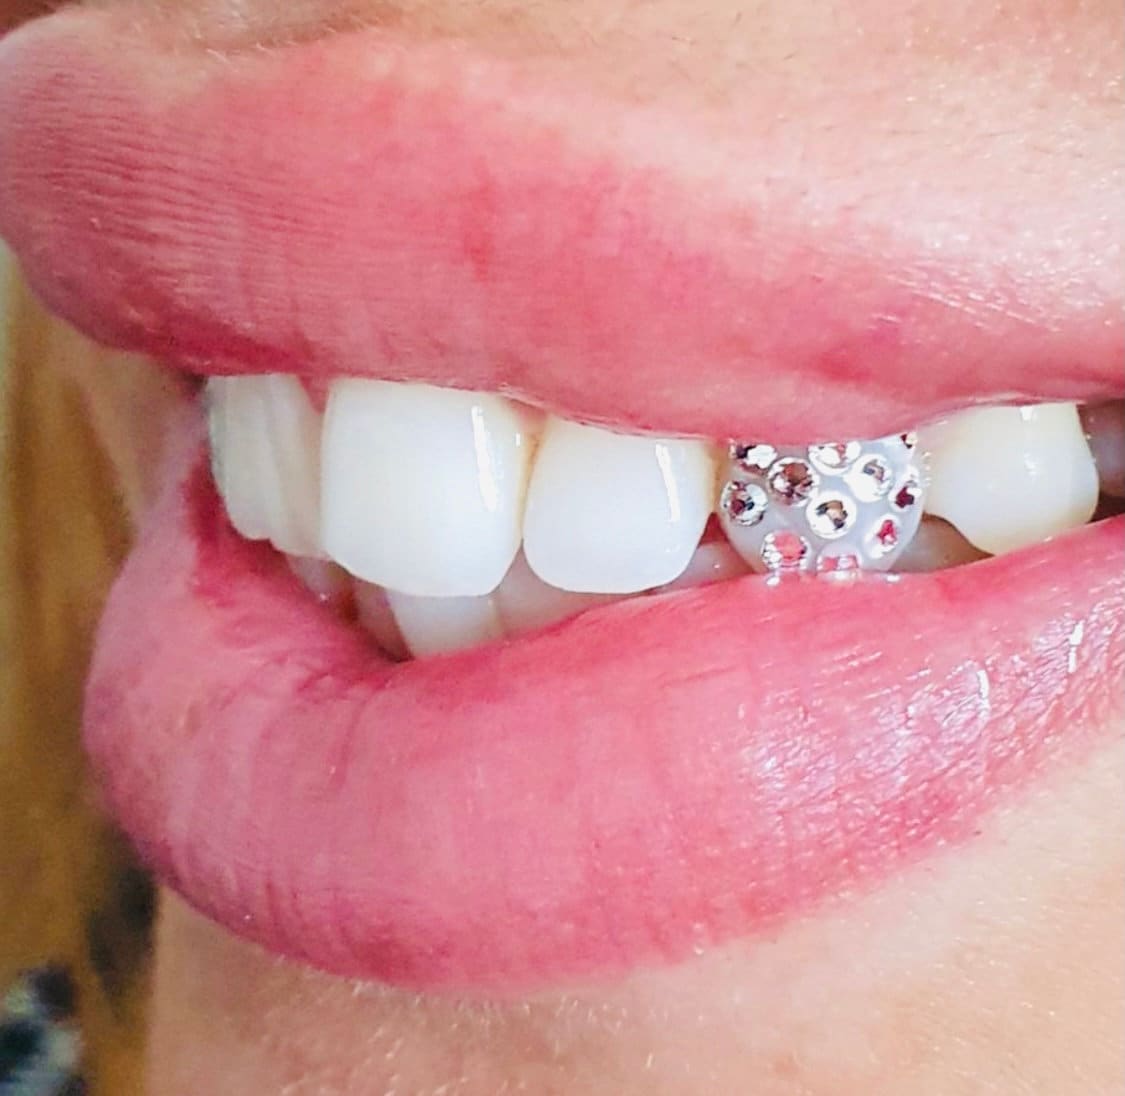 5x Tooth Gem Stones Top Quality Crystal Rhinestone Gems Glue